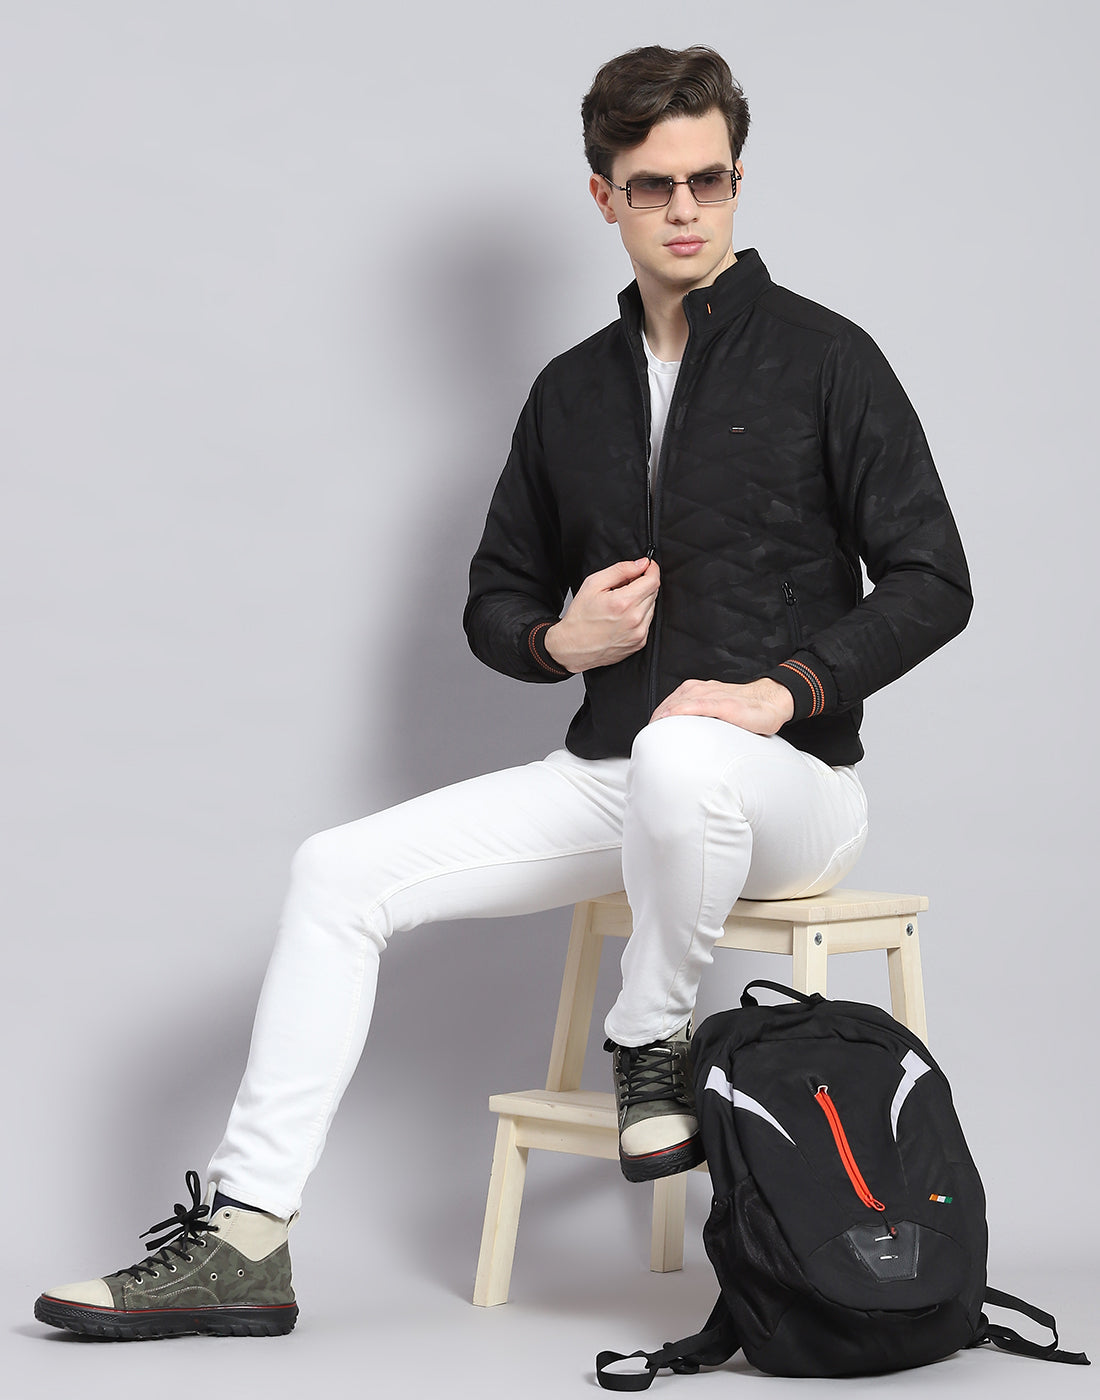 Men's Front Zip Black Leather Jacket NEW Real Genuine Lambskin Club Fashion  Wear | eBay